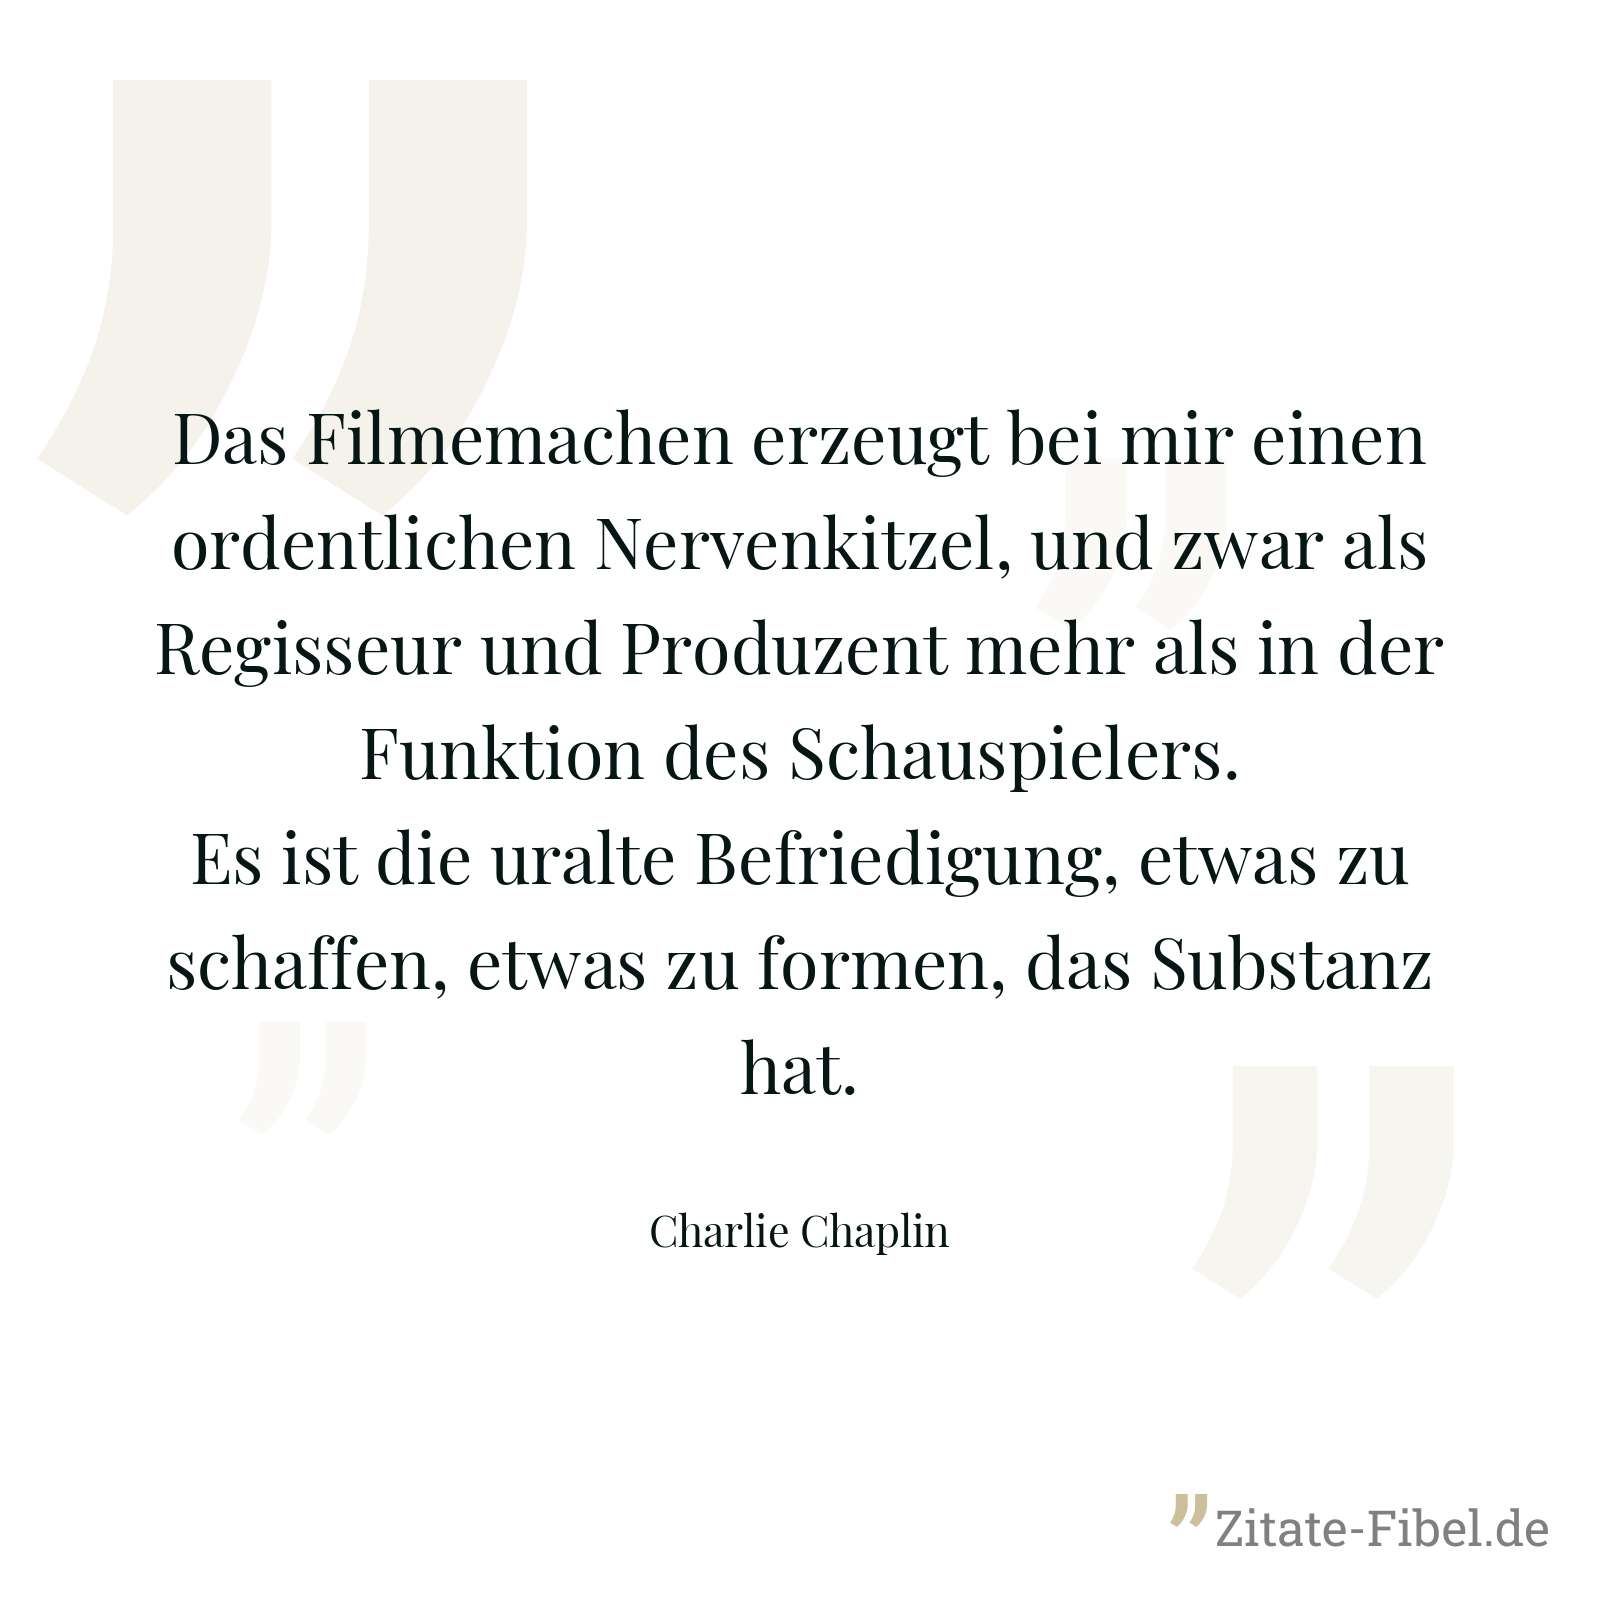 Das Filmemachen erzeugt bei mir einen ordentlichen Nervenkitzel, und zwar als Regisseur und Produzent mehr als in der Funktion des Schauspielers. Es ist die uralte Befriedigung, etwas zu schaffen, etwas zu formen, das Substanz hat. - Charlie Chaplin